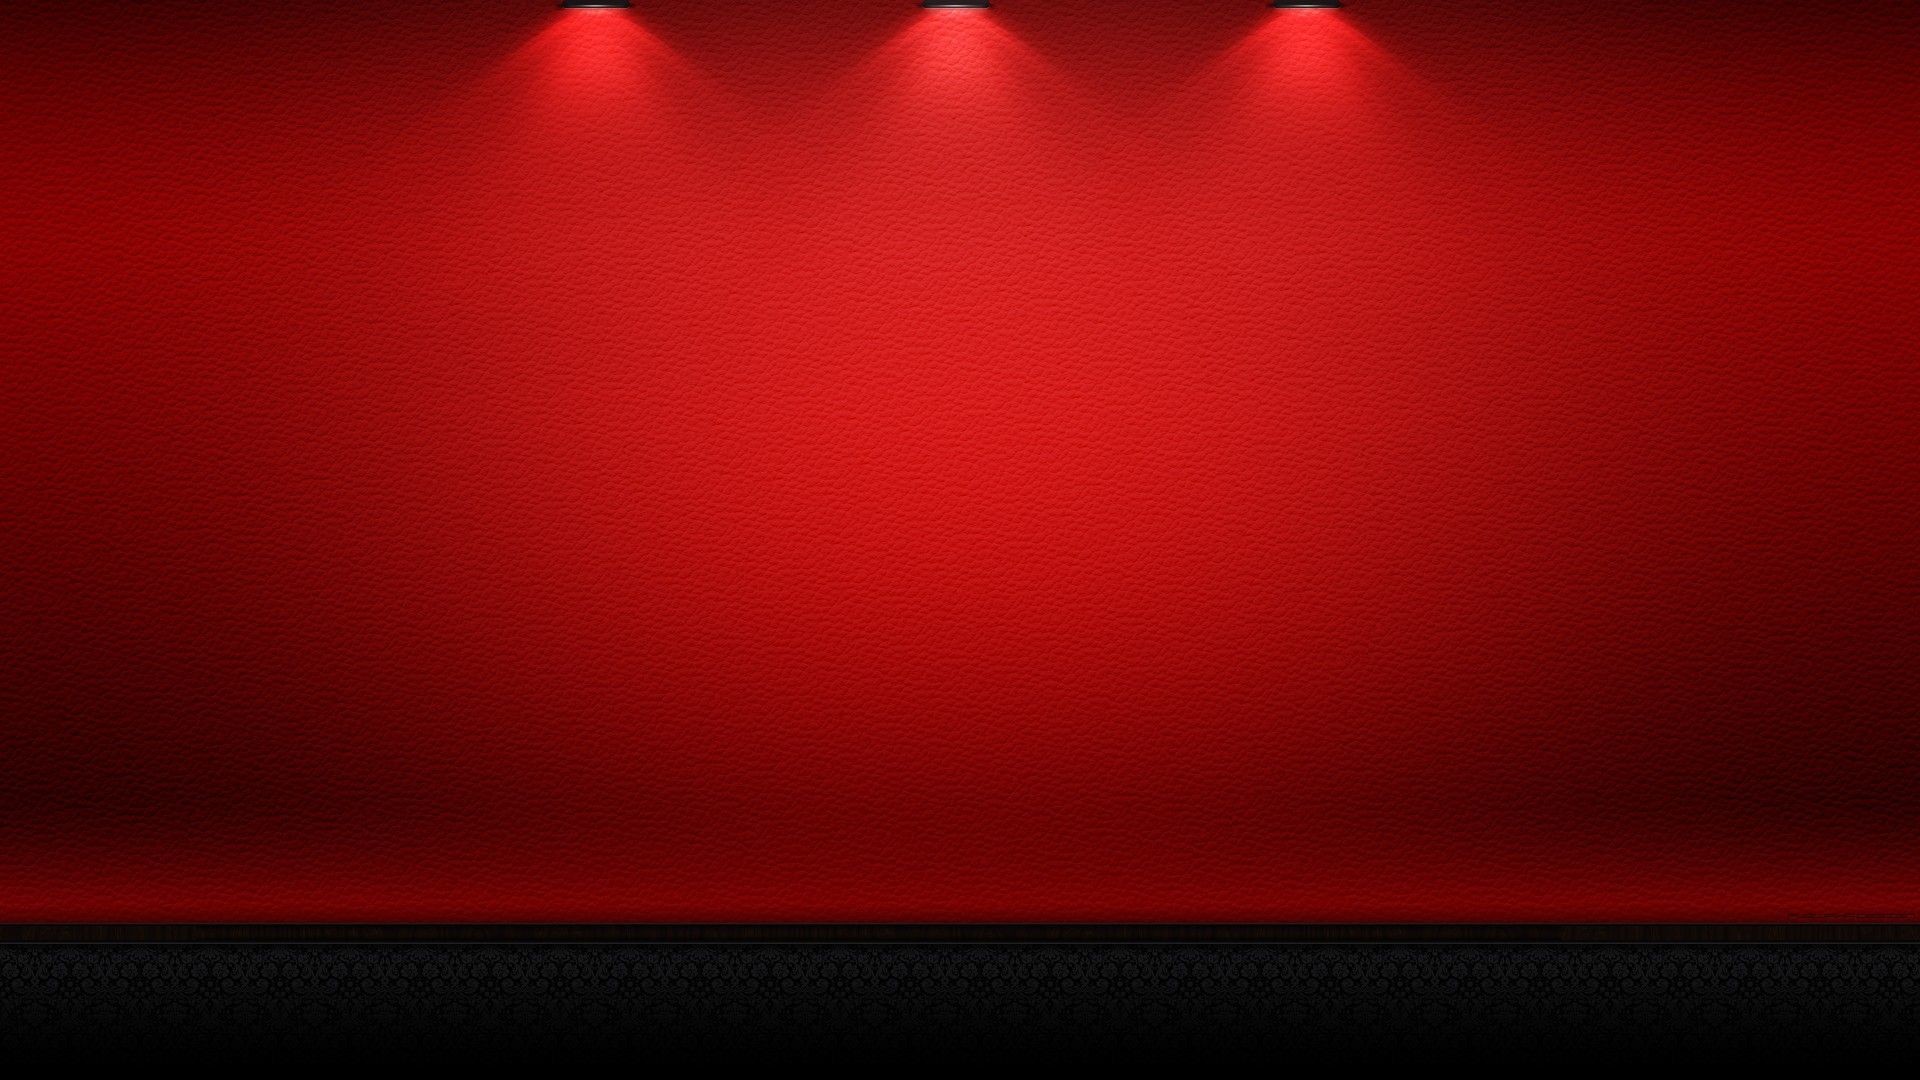 1920x1080 Red HD Wallpapers 1080p - WallpaperSafari